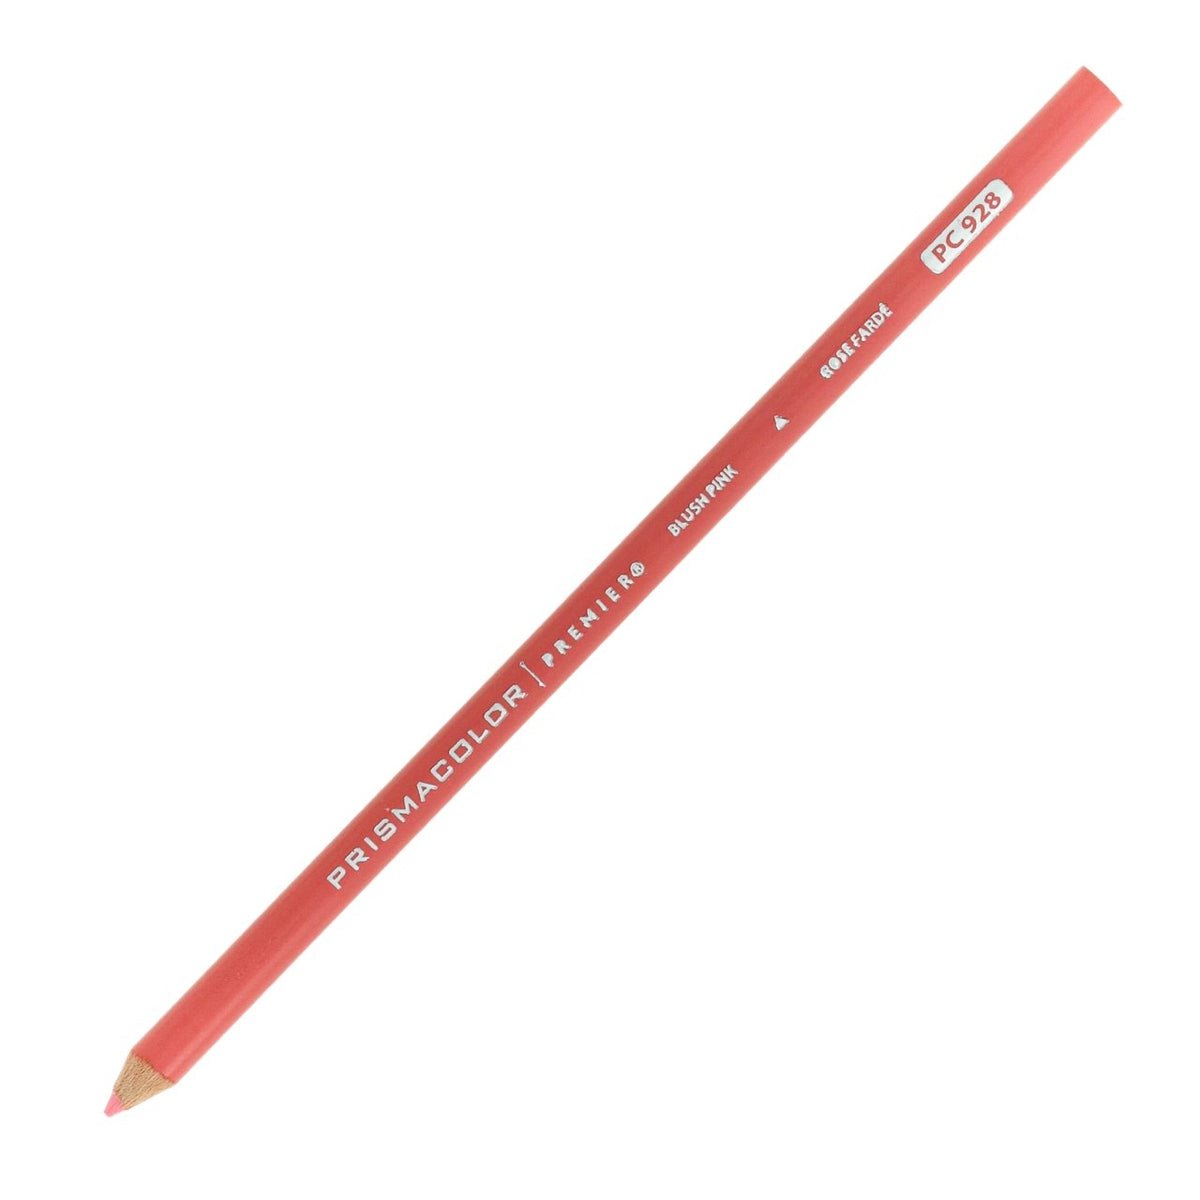 Prismacolor Premier Colored Pencil - Blush Pink 928 - merriartist.com